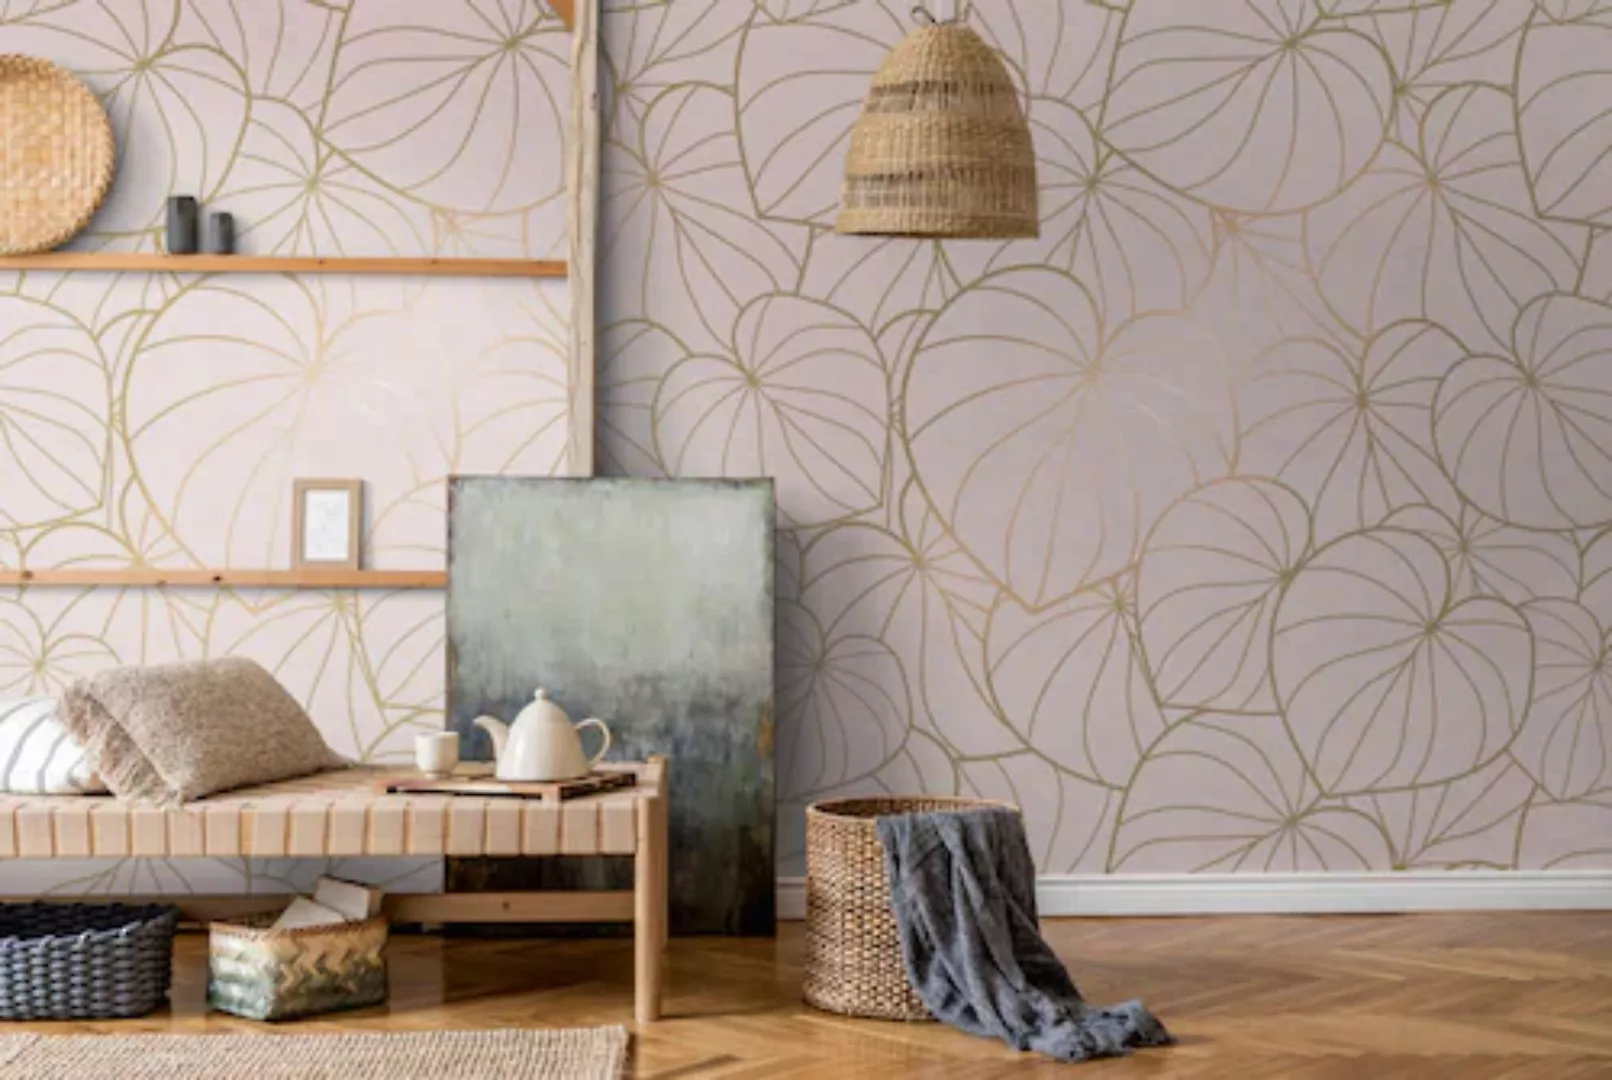 Bricoflor Metallic Tapete in Rosa Gold Fototapete mit Blättern Modern Ideal günstig online kaufen